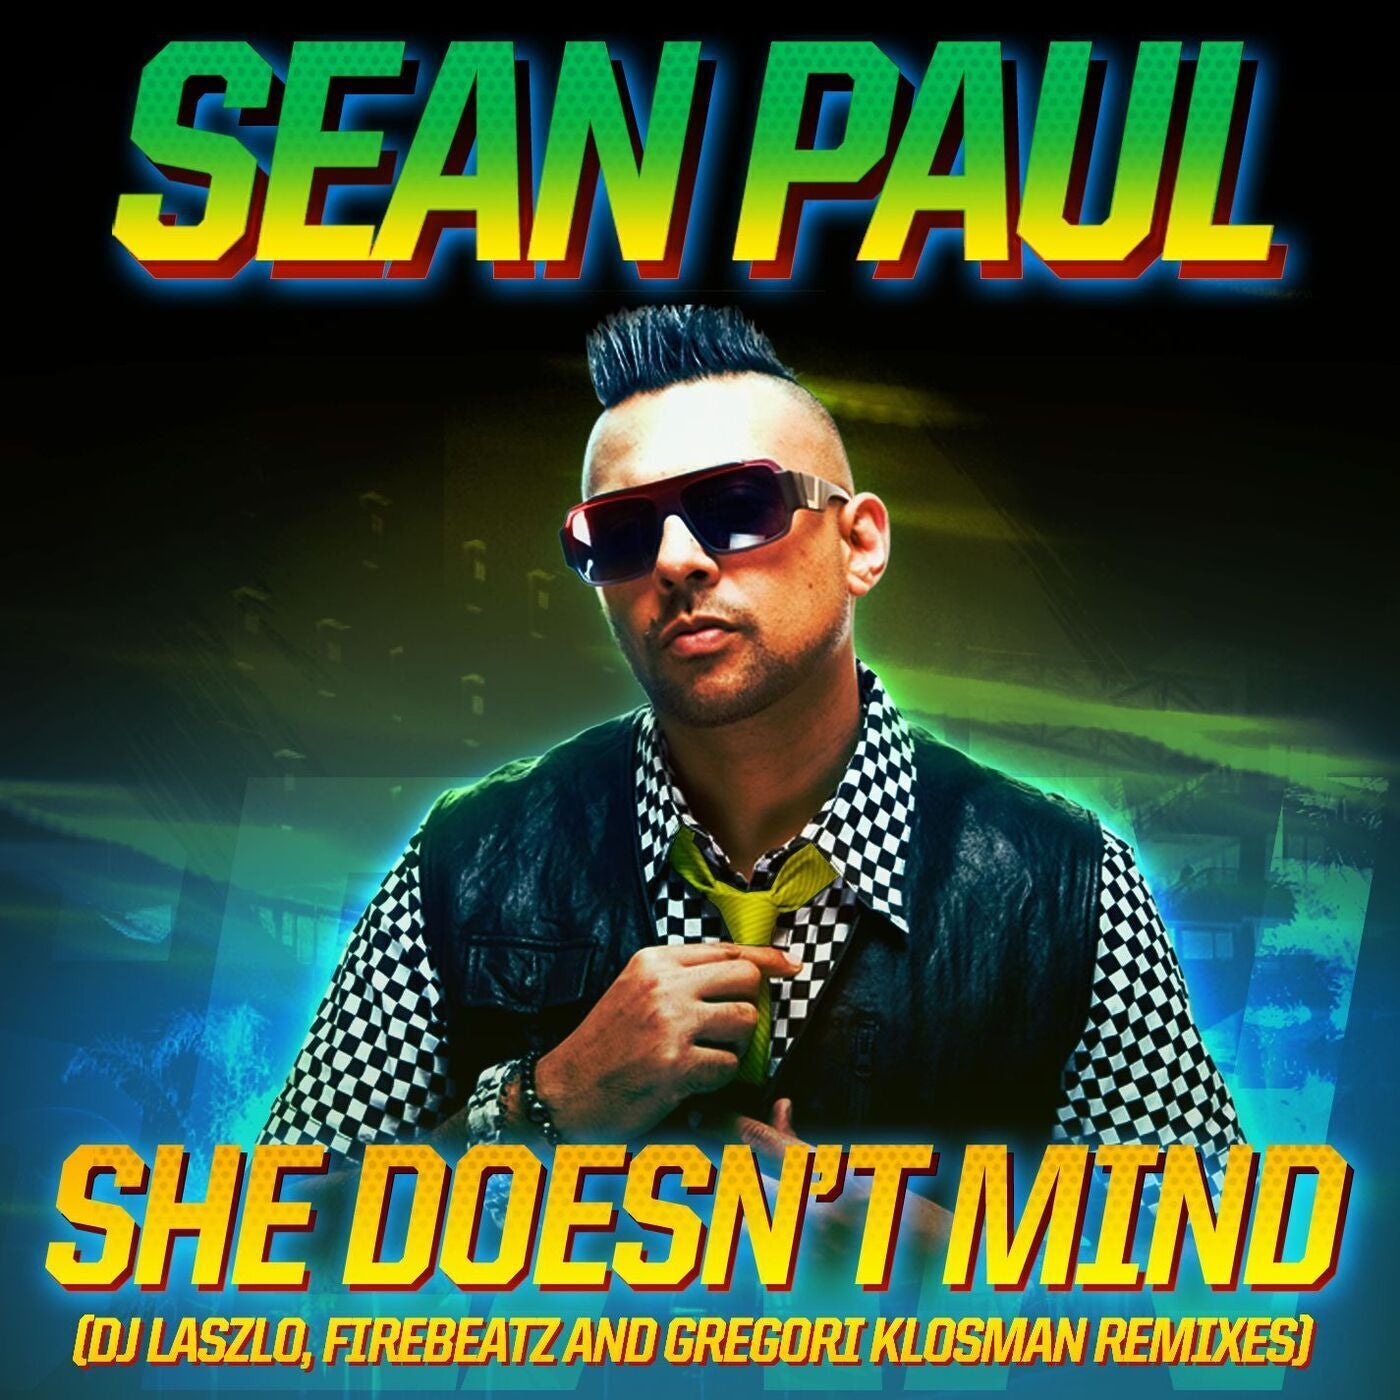 Sean paul love. Sean Paul. Sean Paul 2022. Sean Paul she doesn't Mind. Sean Paul Pitbull.